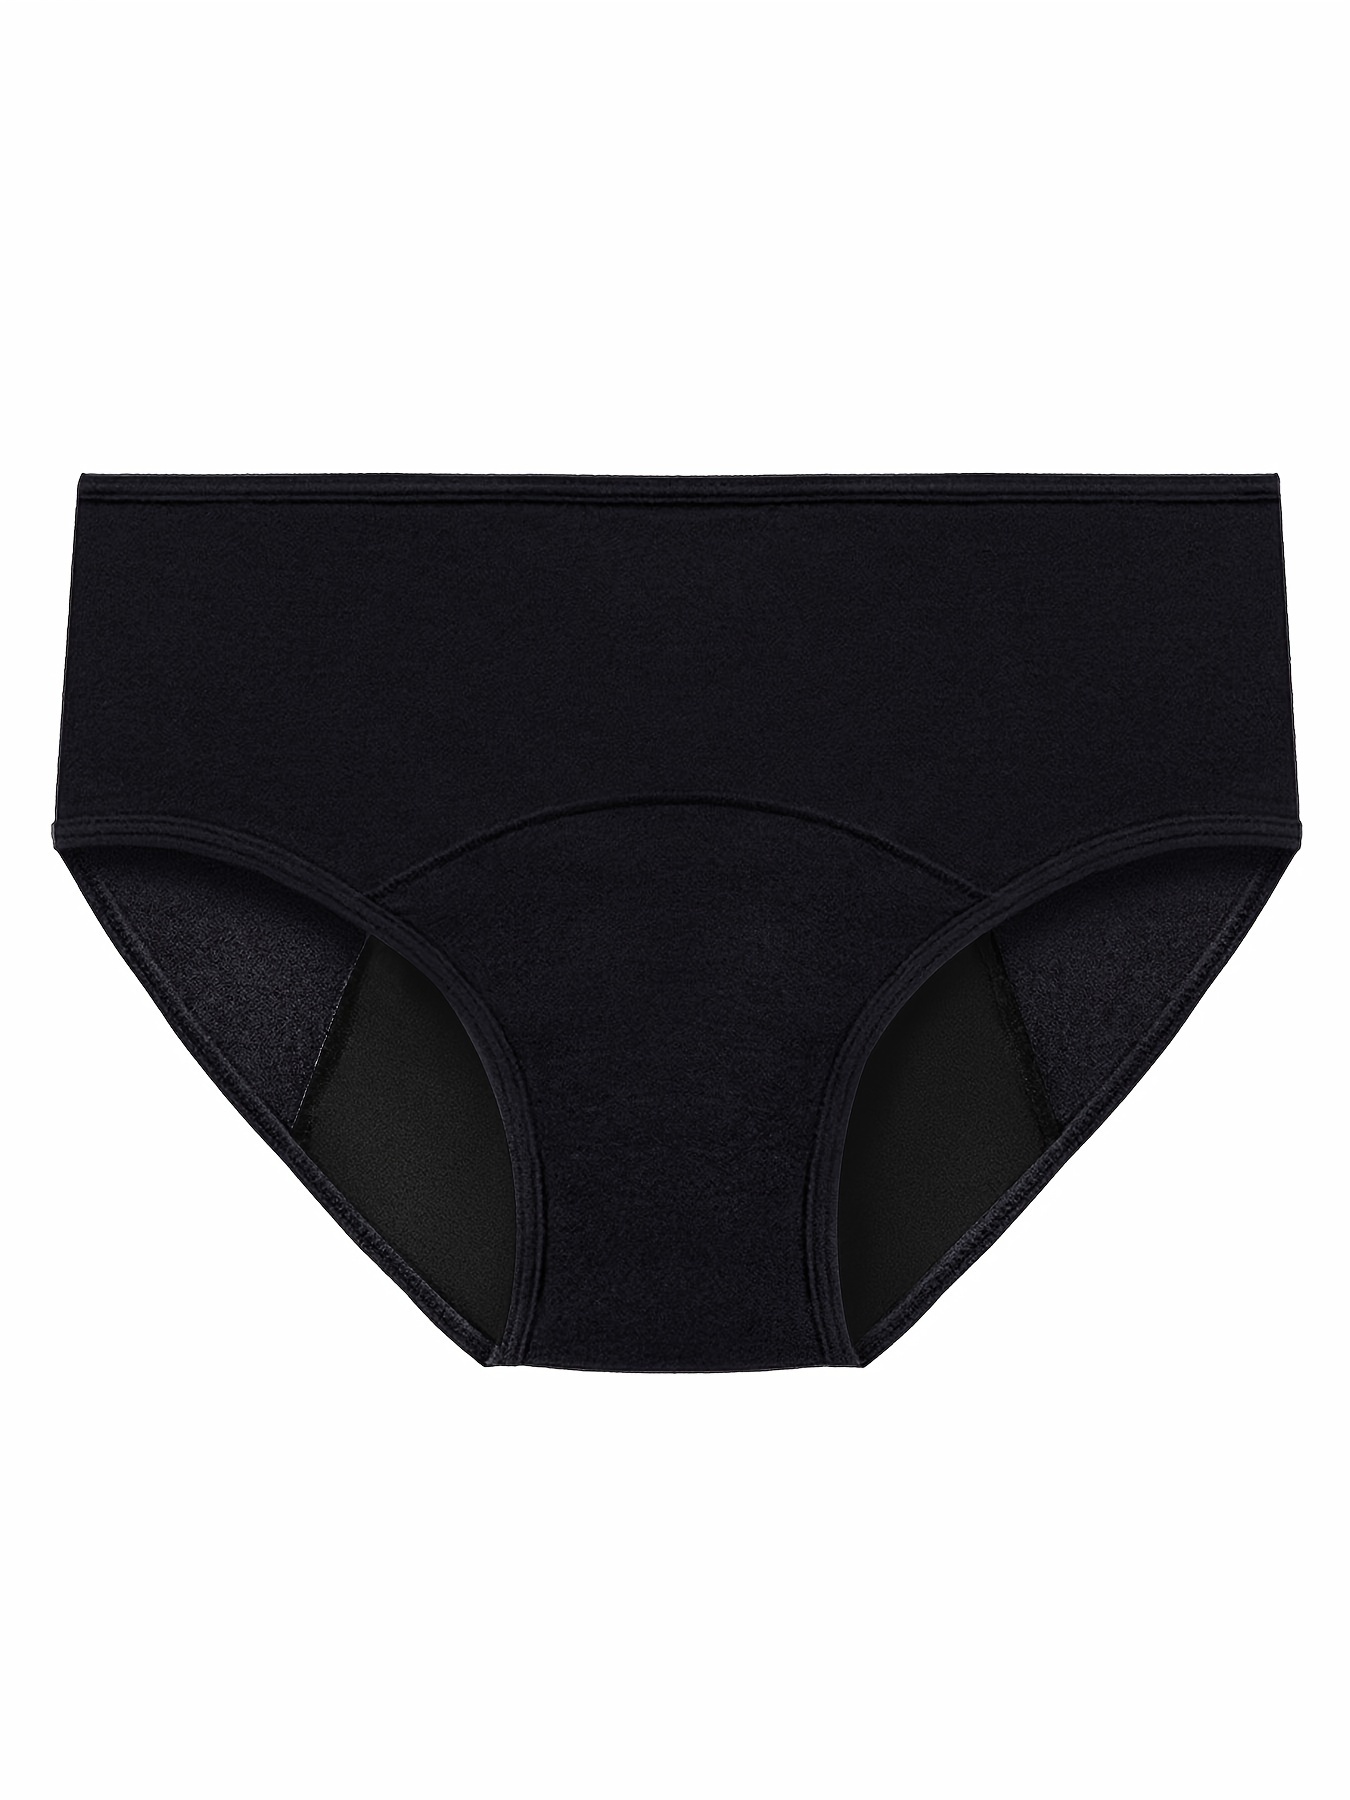 5pcs Plus Size Xs-xxxl Leak Proof Menstrual Panties Physiological Pants Women  Underwear Brathable Cotton Briefs